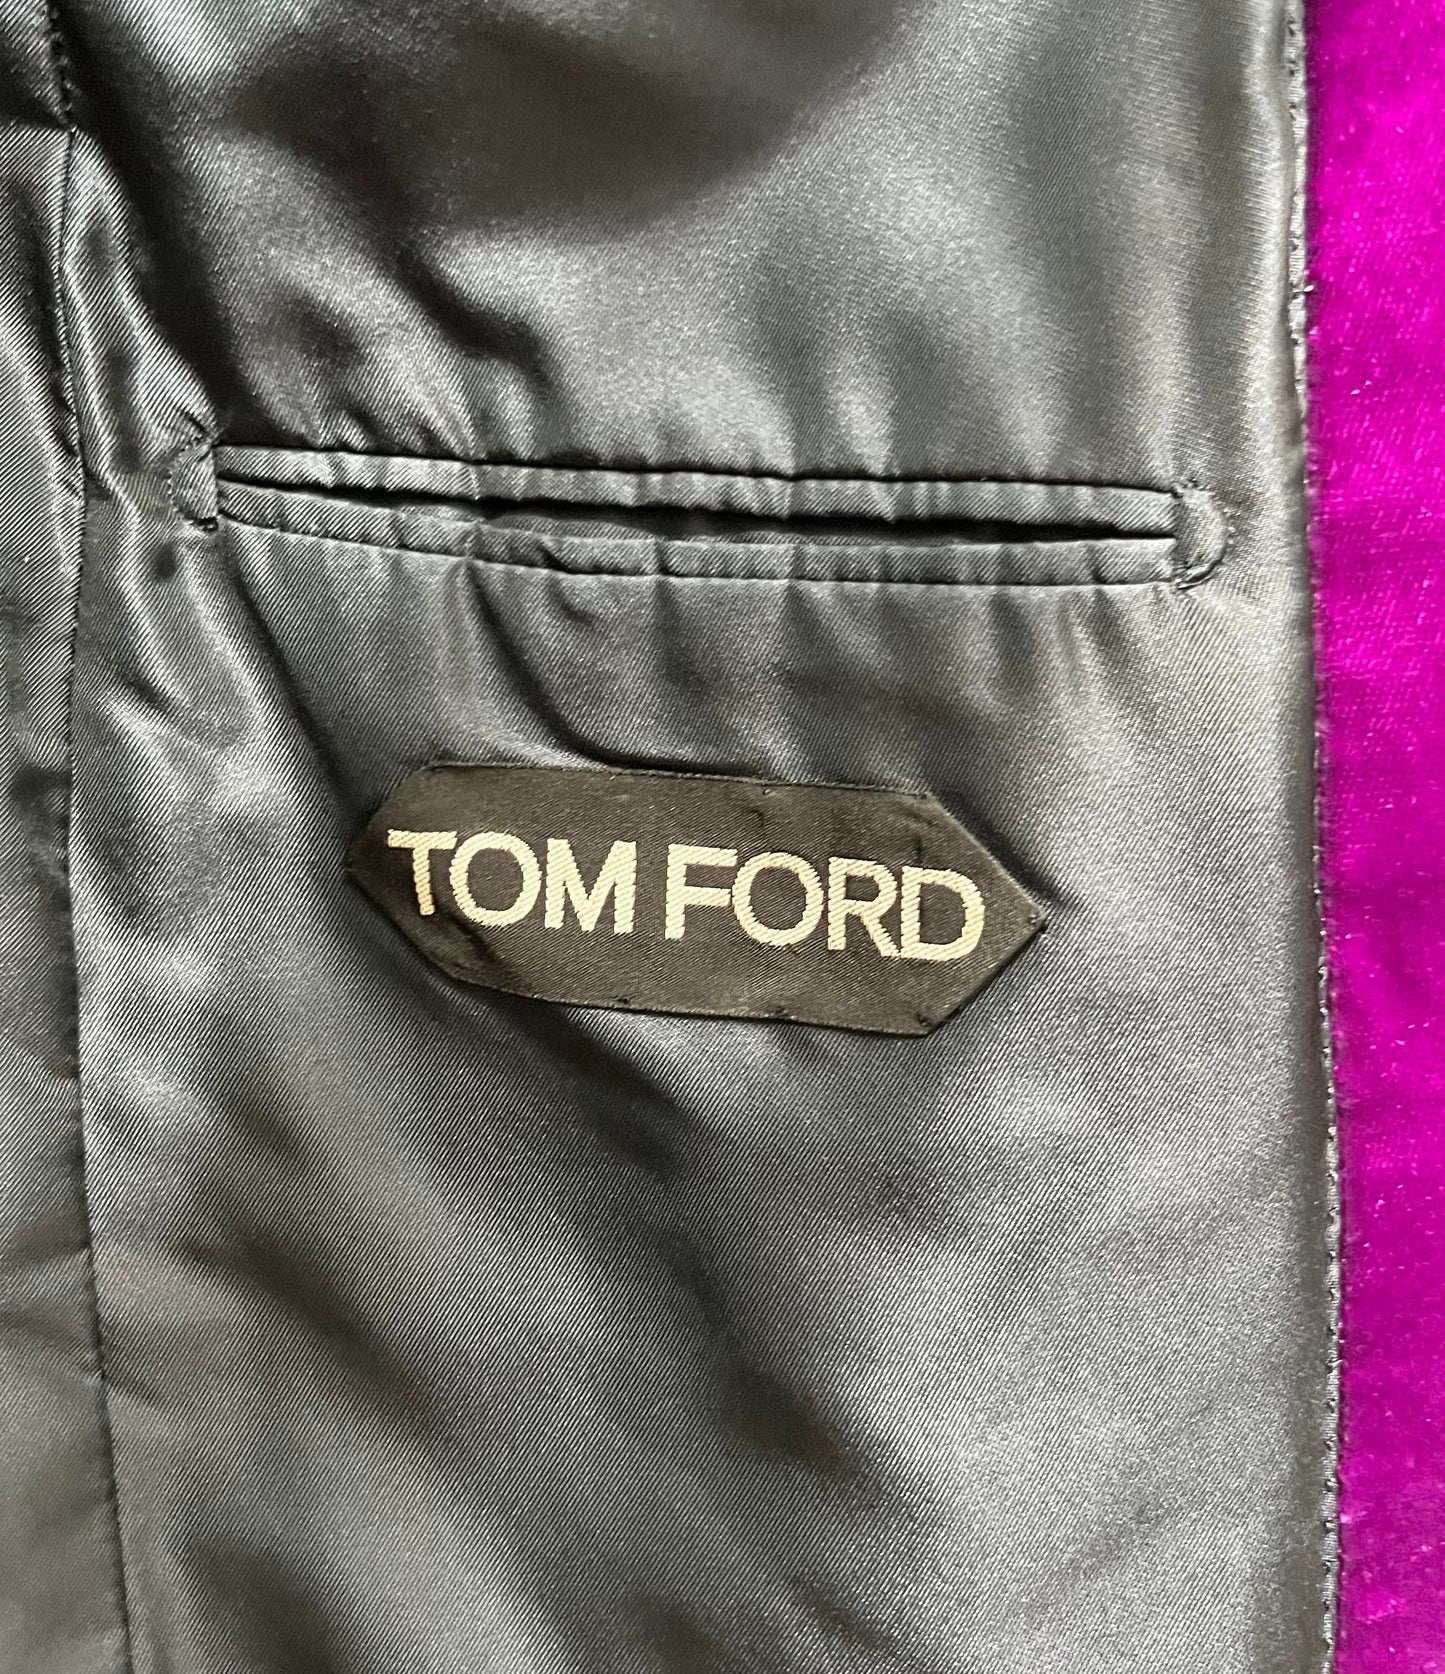 Tom Ford - Velvet Tuxedo/Dinner Jacket, EU 48R